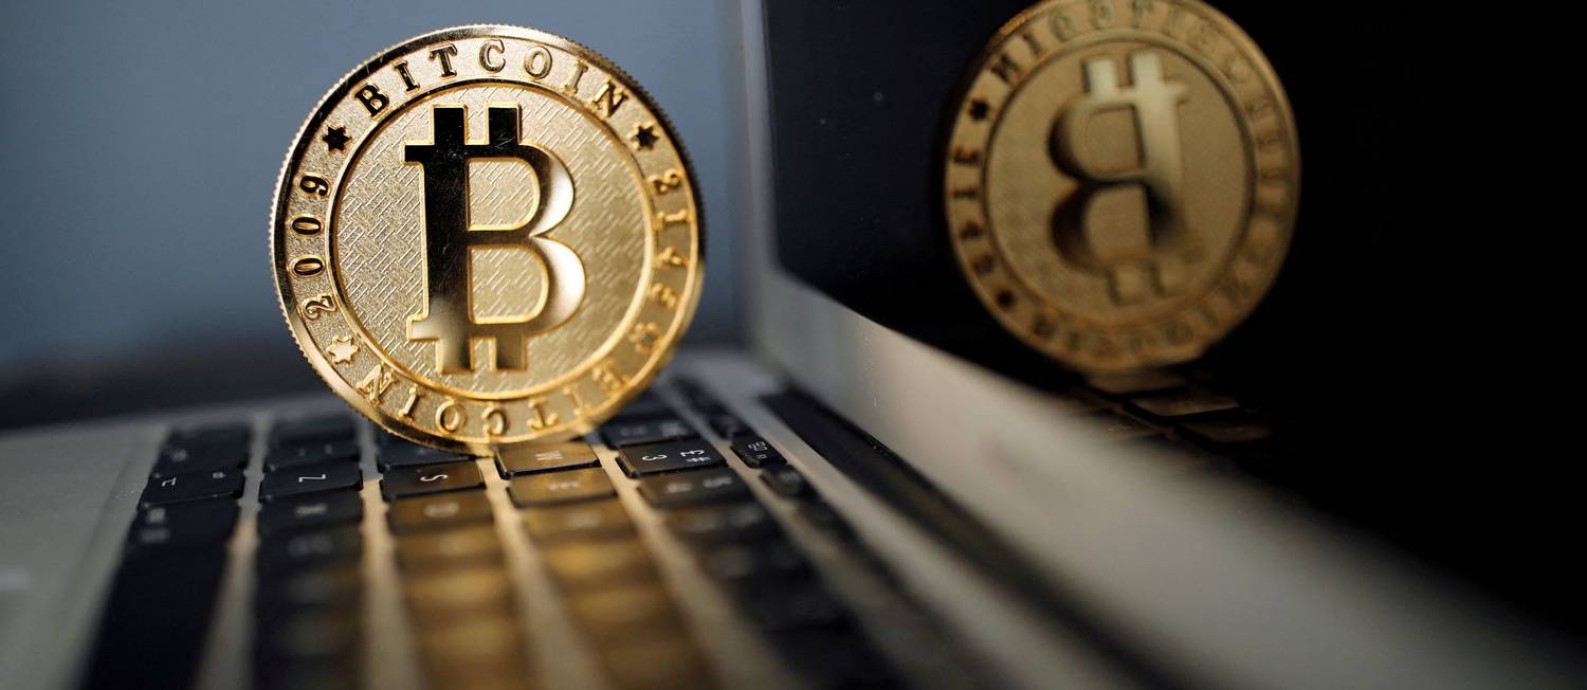 Representação da moeda digital bitcoin Foto: BENOIT TESSIER / REUTERS/23-6-2017